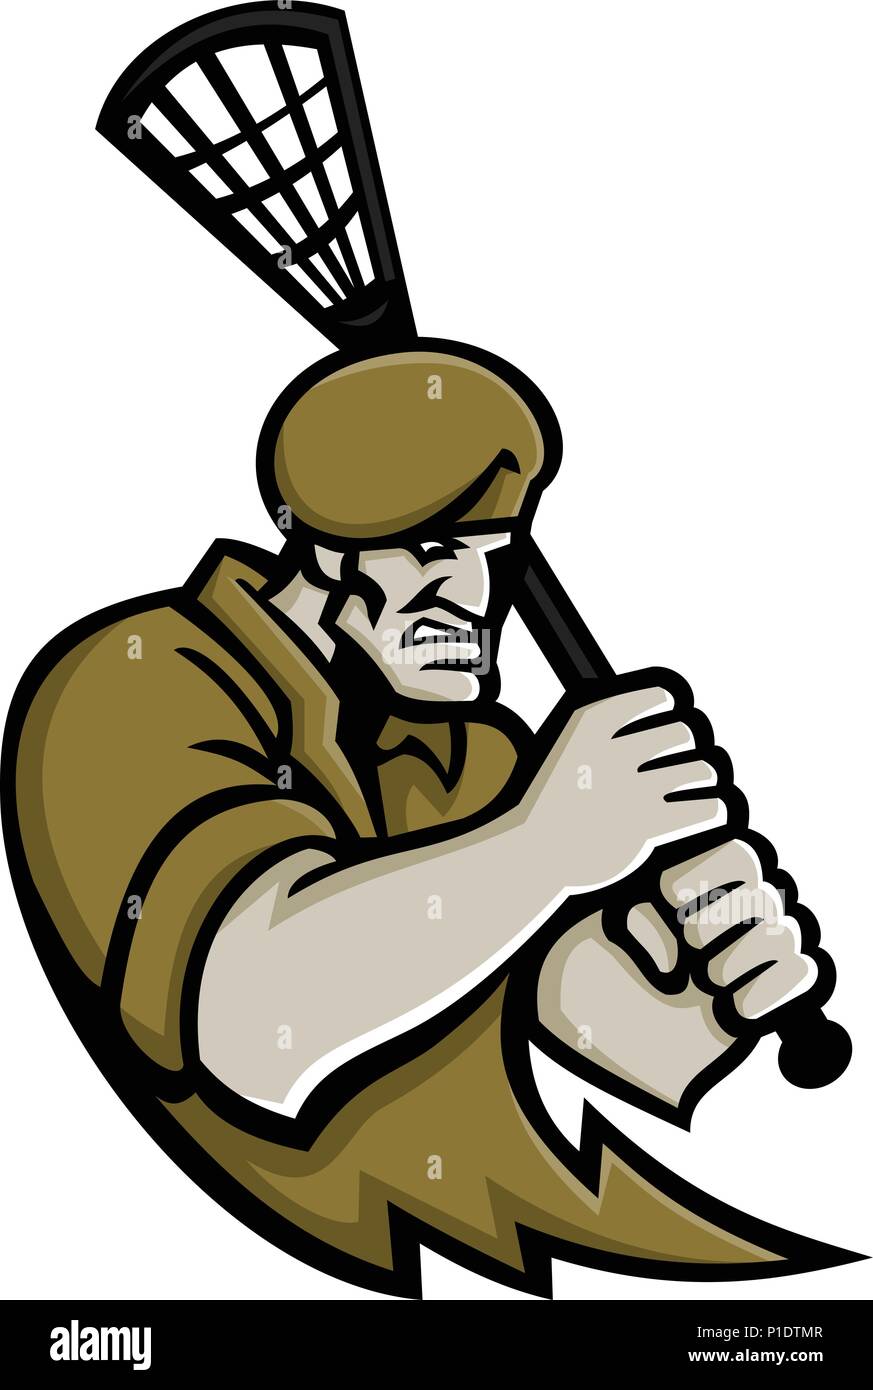 Maskottchen Symbol Abbildung: Büste eines Commando oder Elite leichte Infanterie oder Special forces Soldat mit lacrosse Stick von vorne auf dem isolierten Bac gesehen Stock Vektor